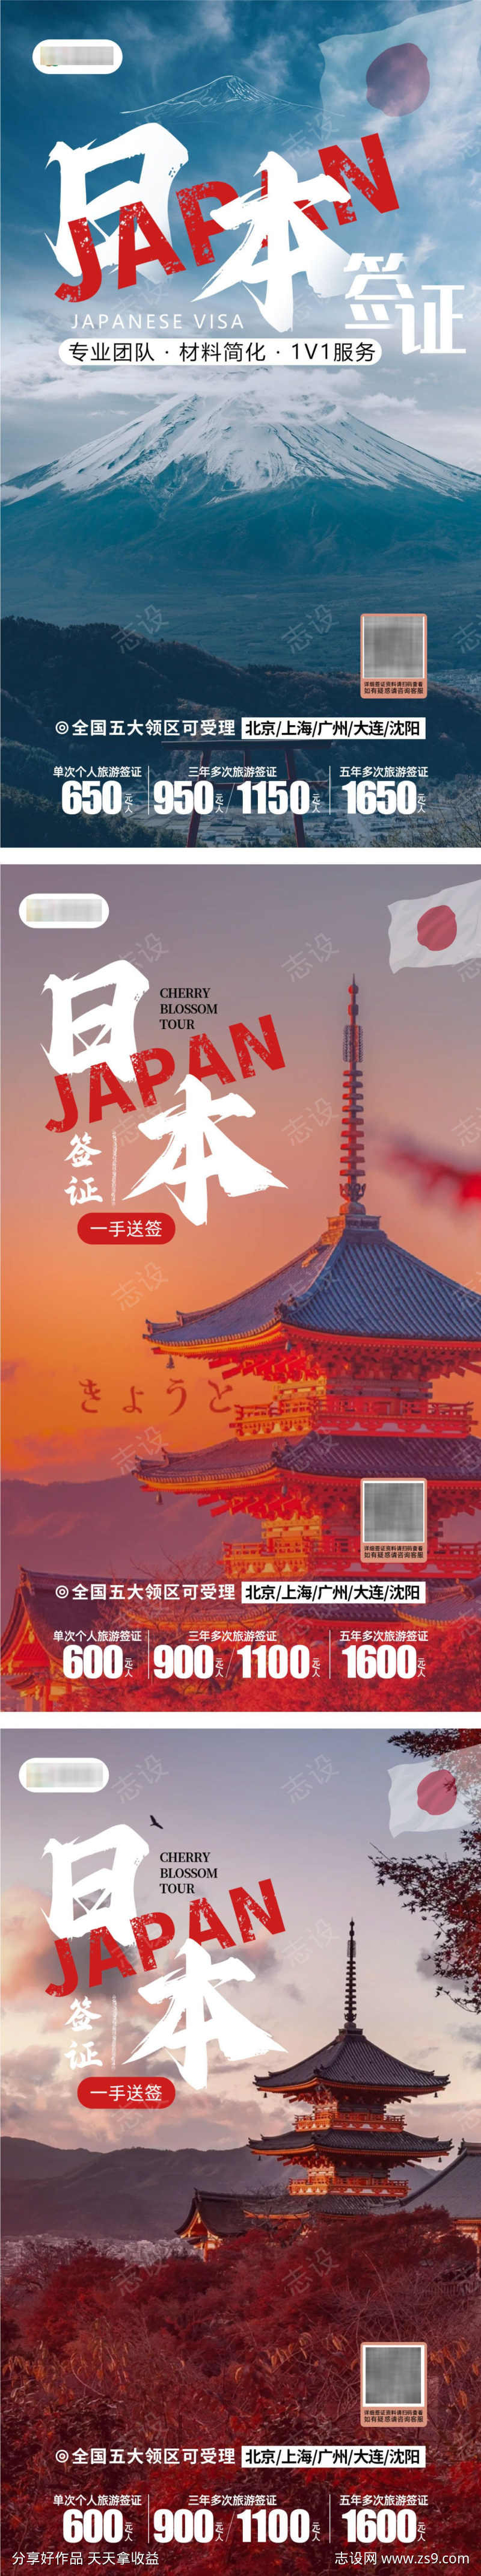 日本签证旅游海报